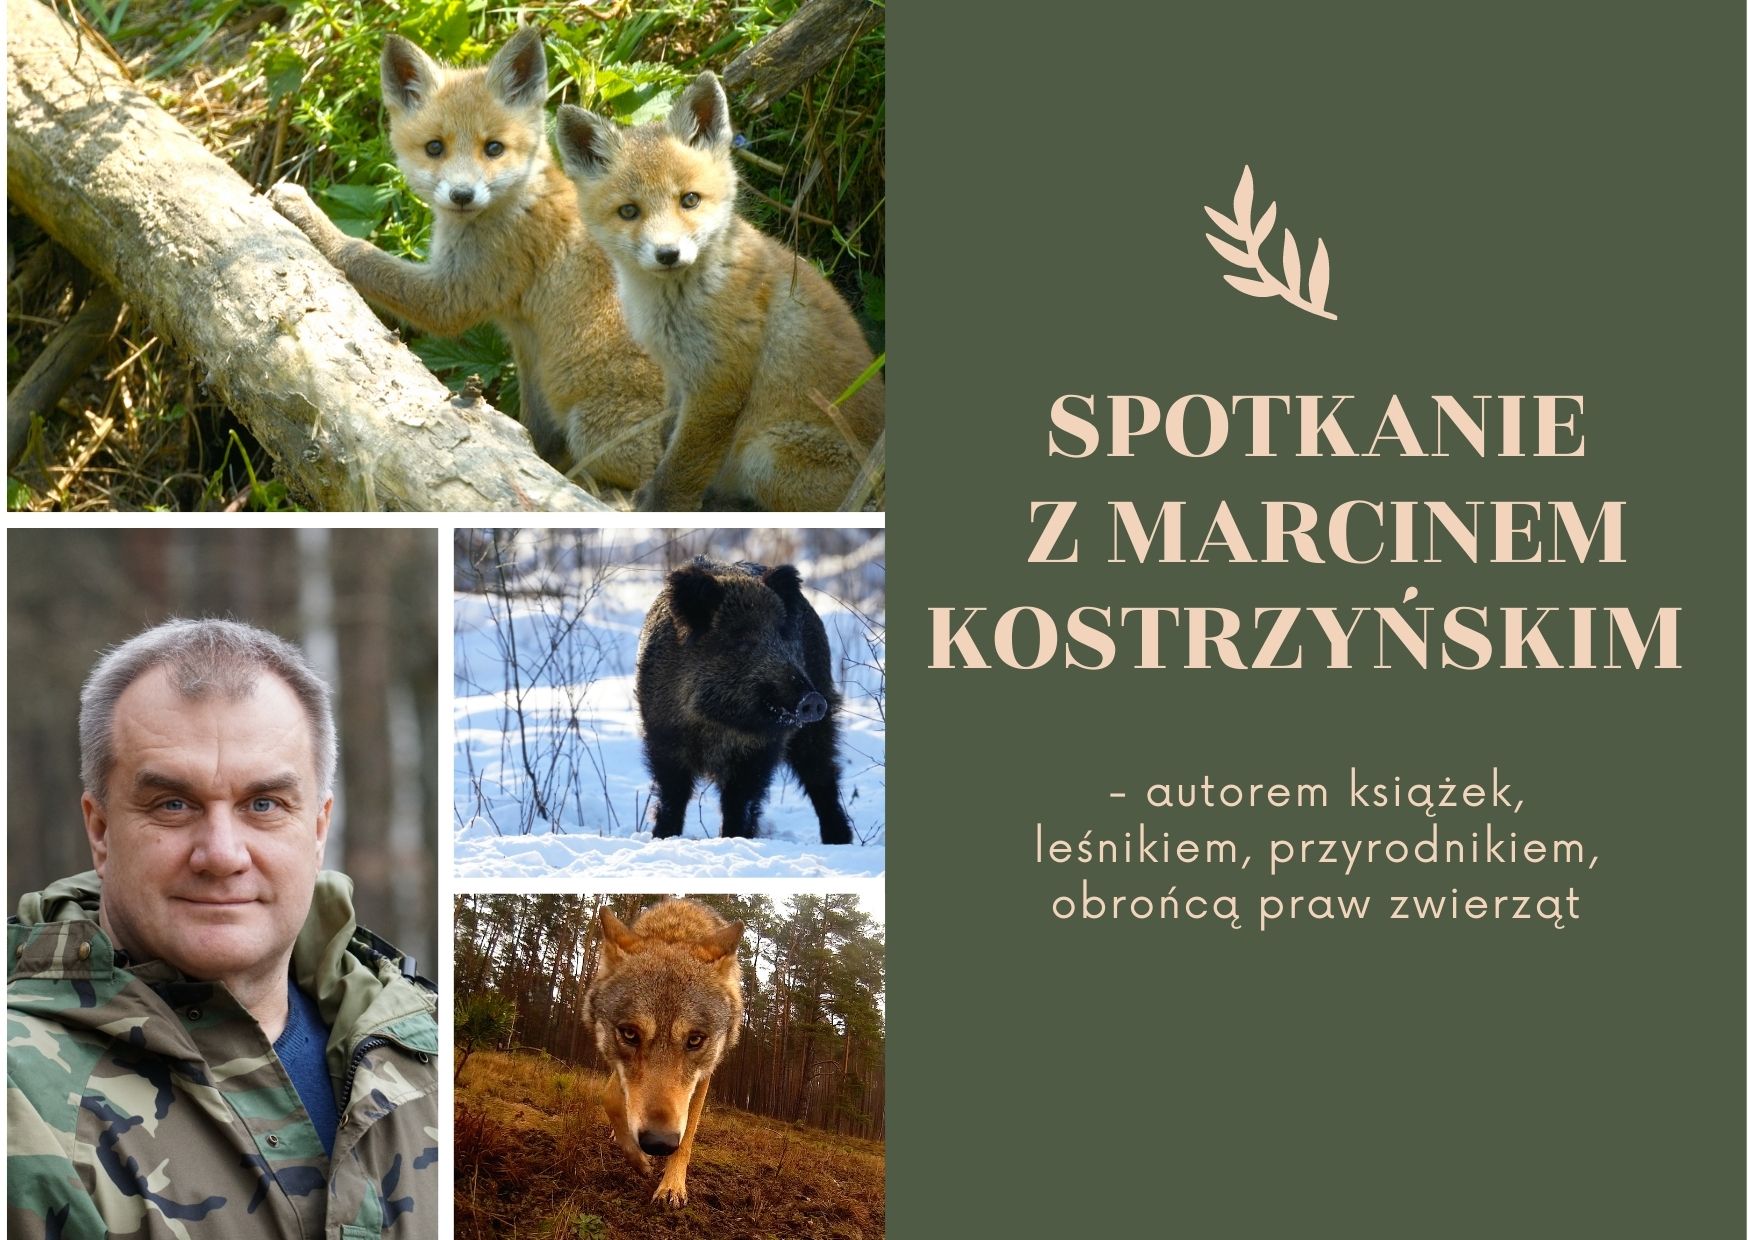 Spotkanie z Marcinem Kostrzyńskim  - autorem książek, leśnikiem, przyrodnikiem, obrońcą praw zwierząt